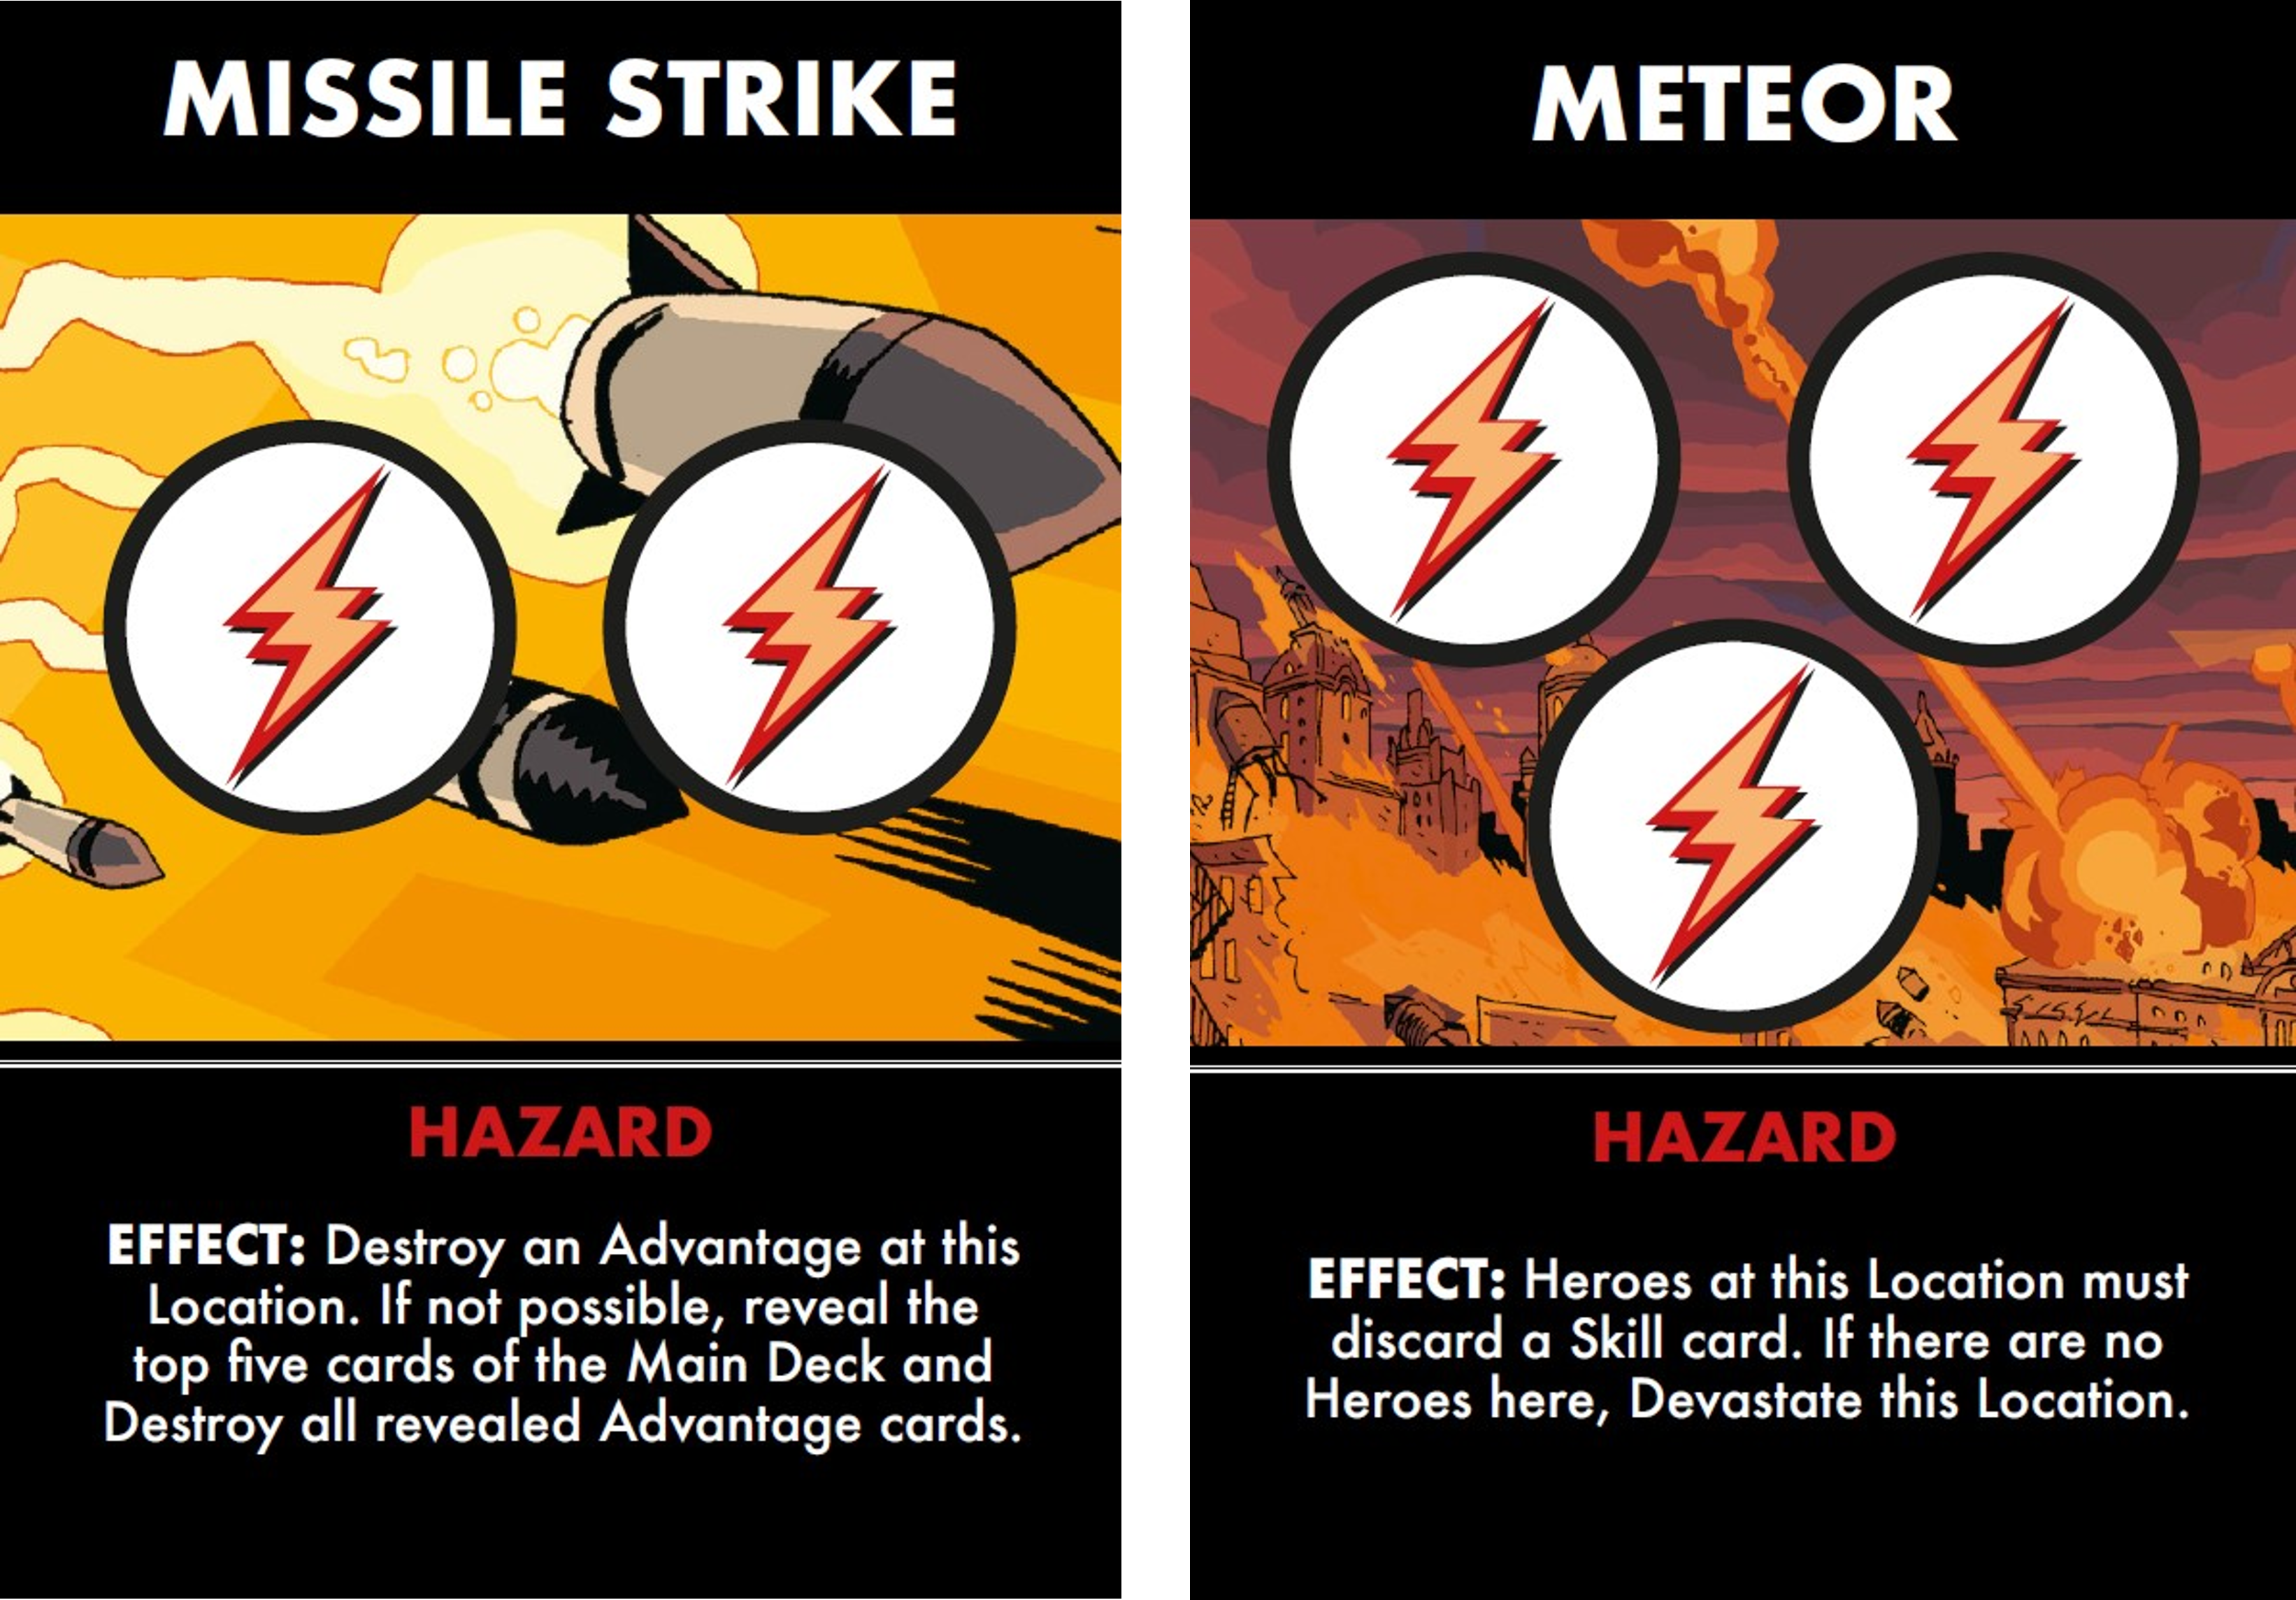 Missile Strike - Hazard Card